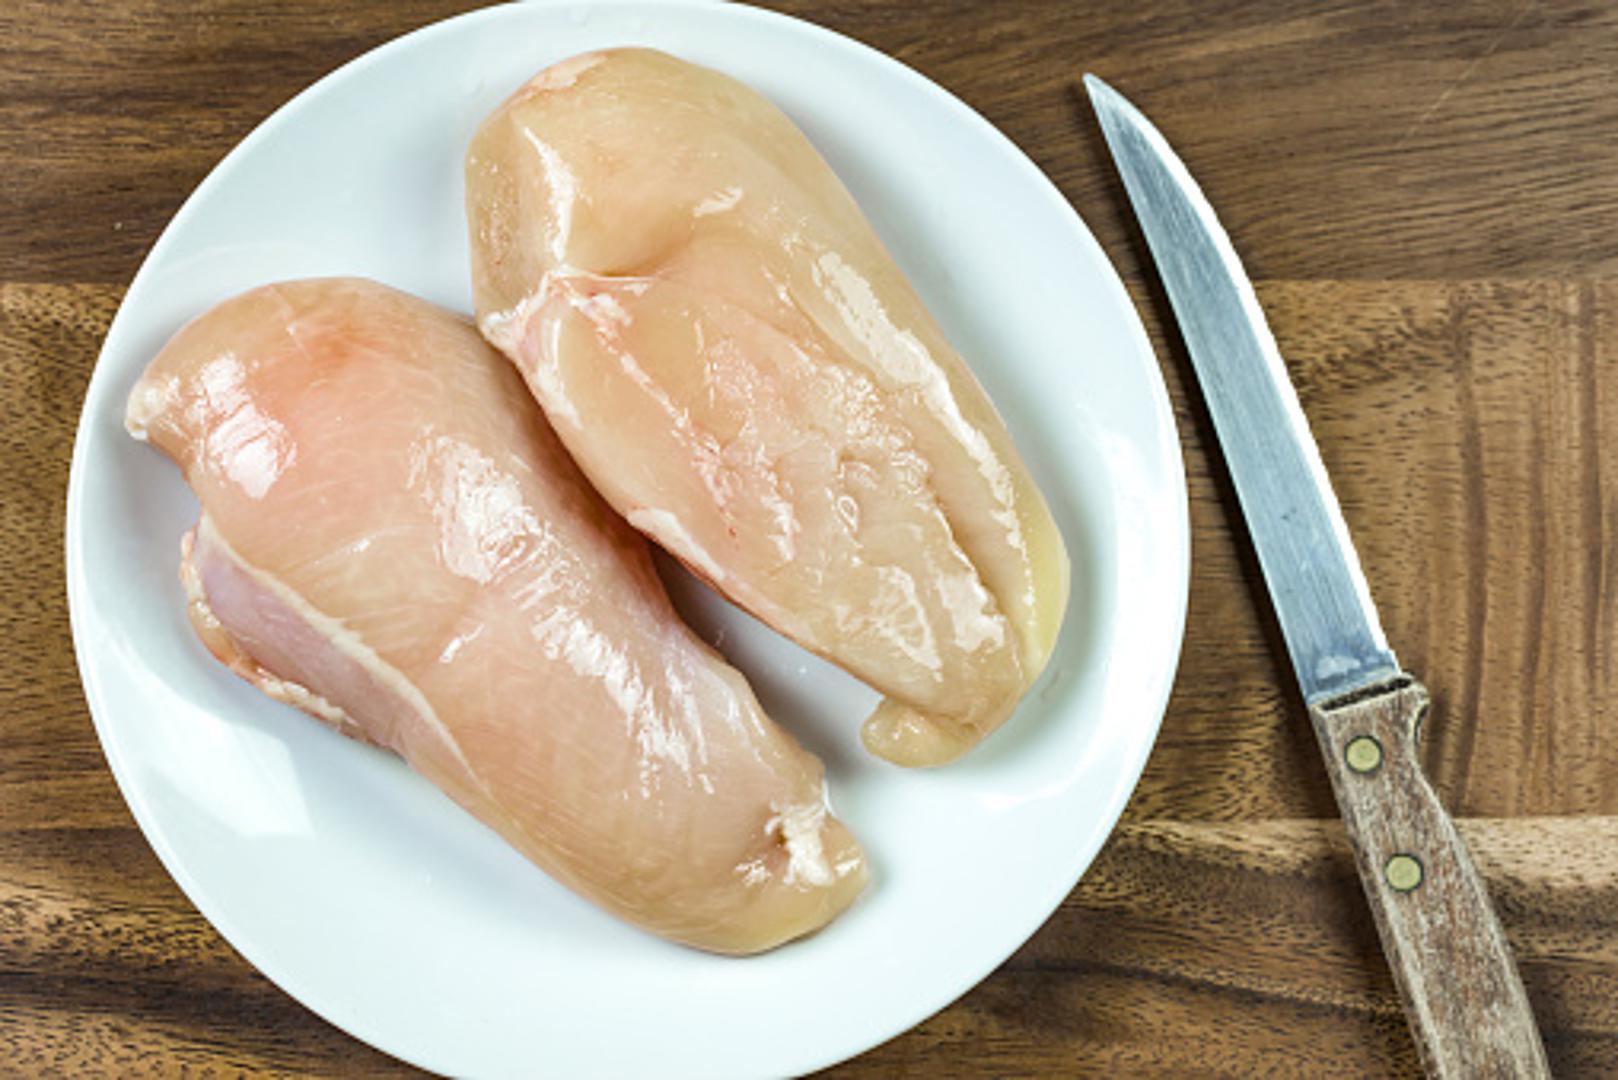 Pileće meso može, zbog bakterija, biti prijetnja zdravlju ako se ne pripremi kako treba. Evo što biste trebali znati kada je riječ o pilećem mesu i pripremi za jelo...